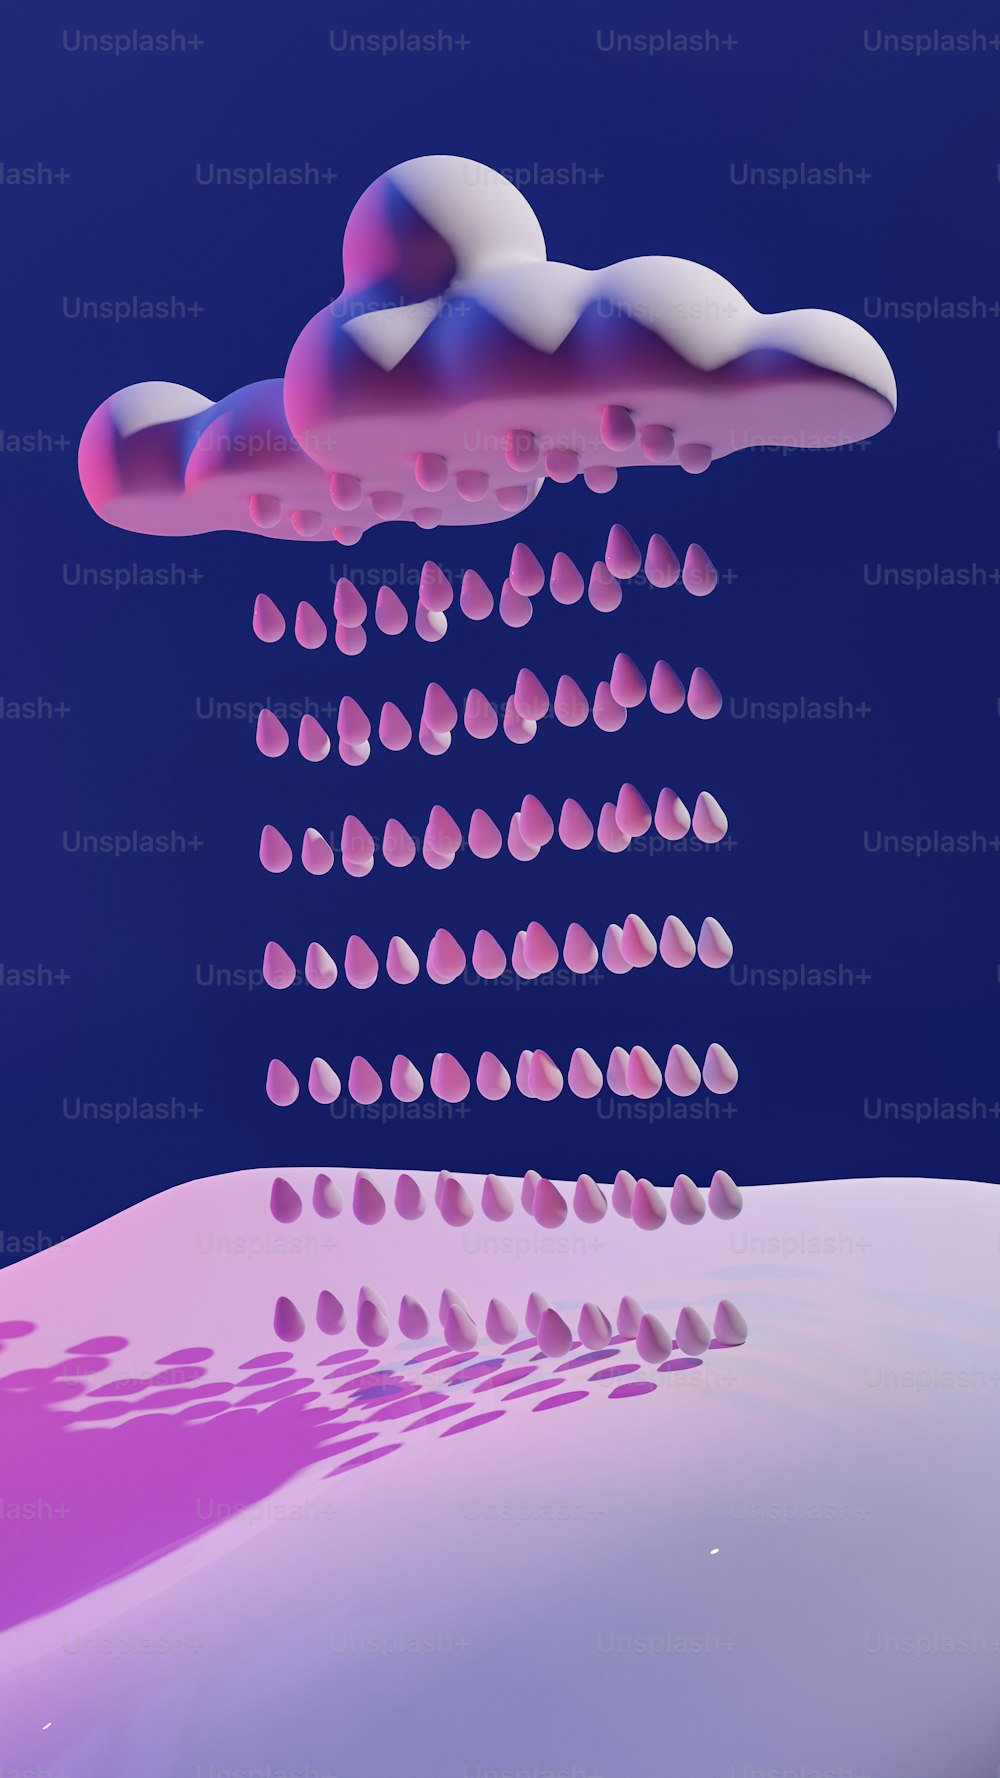 uma imagem gerada por computador de uma nuvem rosa